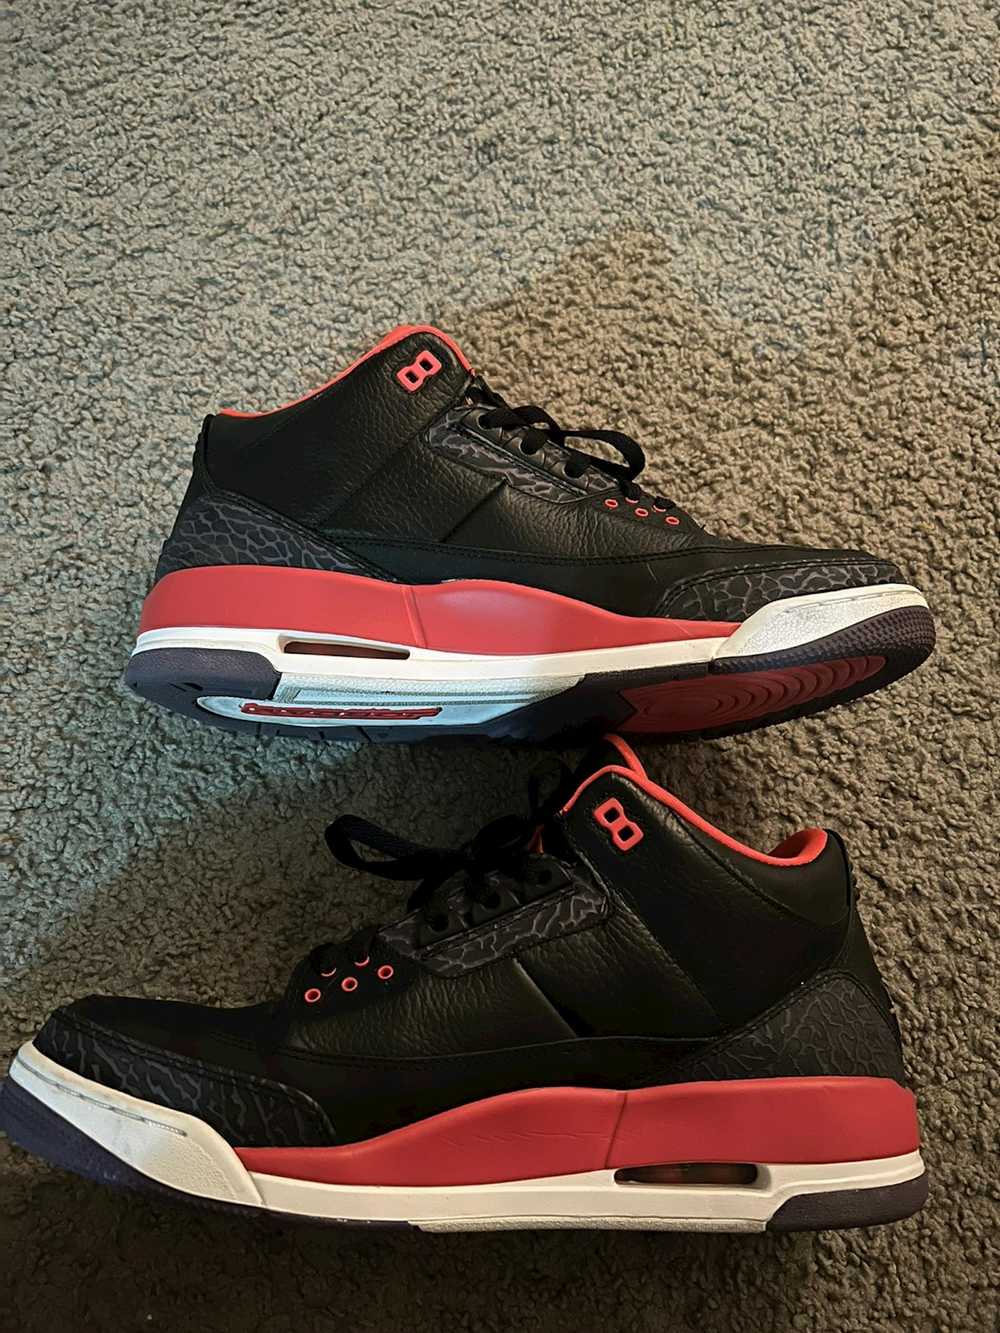 Jordan Brand Jordan 3 Crimson (2013) - image 7